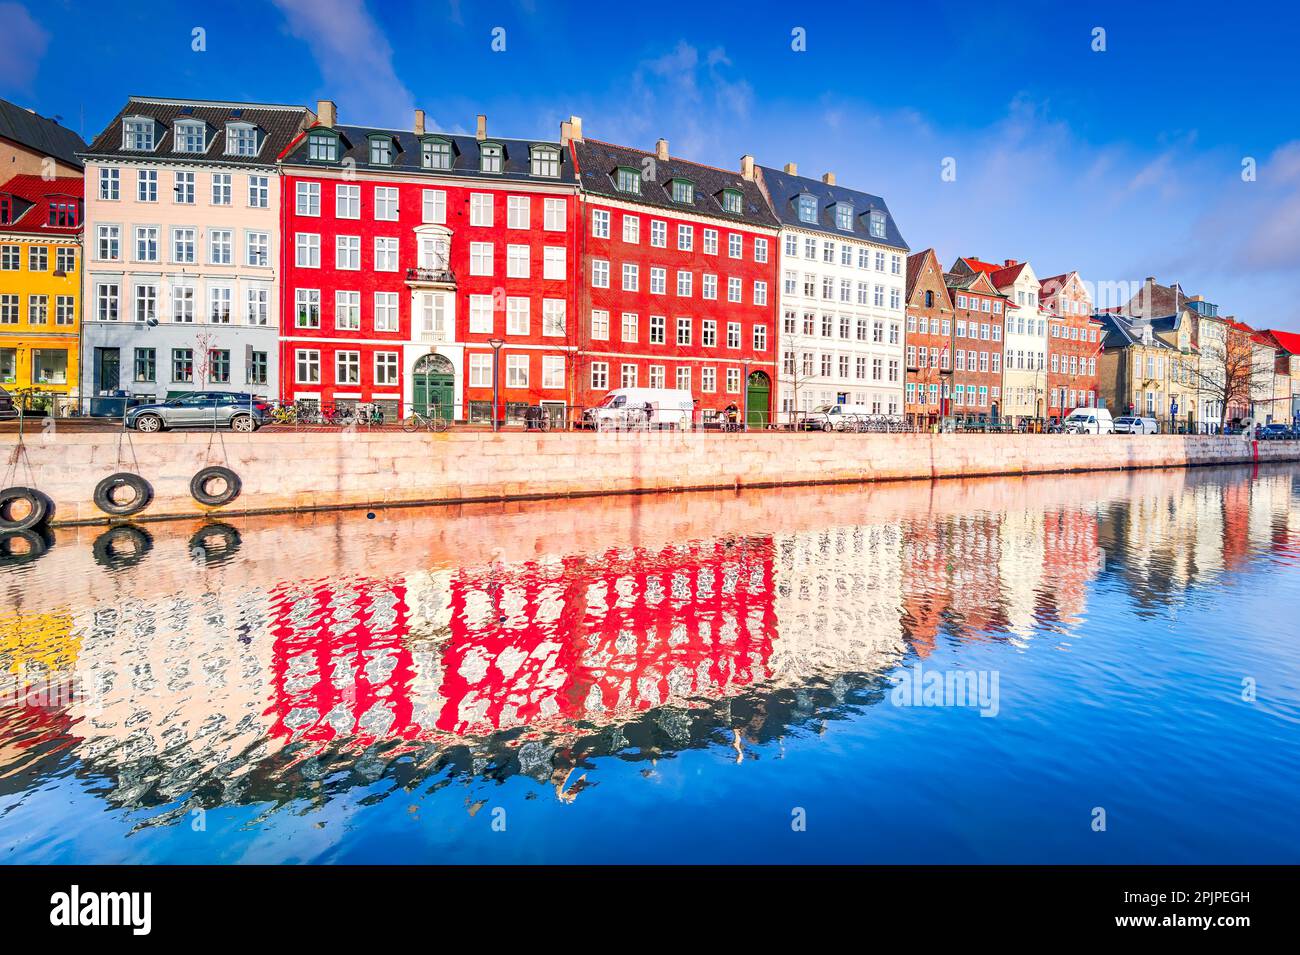 Slotsholmskanalen è un pittoresco canale situato nel cuore di Copenhagen, Danimarca. Edifici storici e importanti, tra cui il Parlamento danese Foto Stock